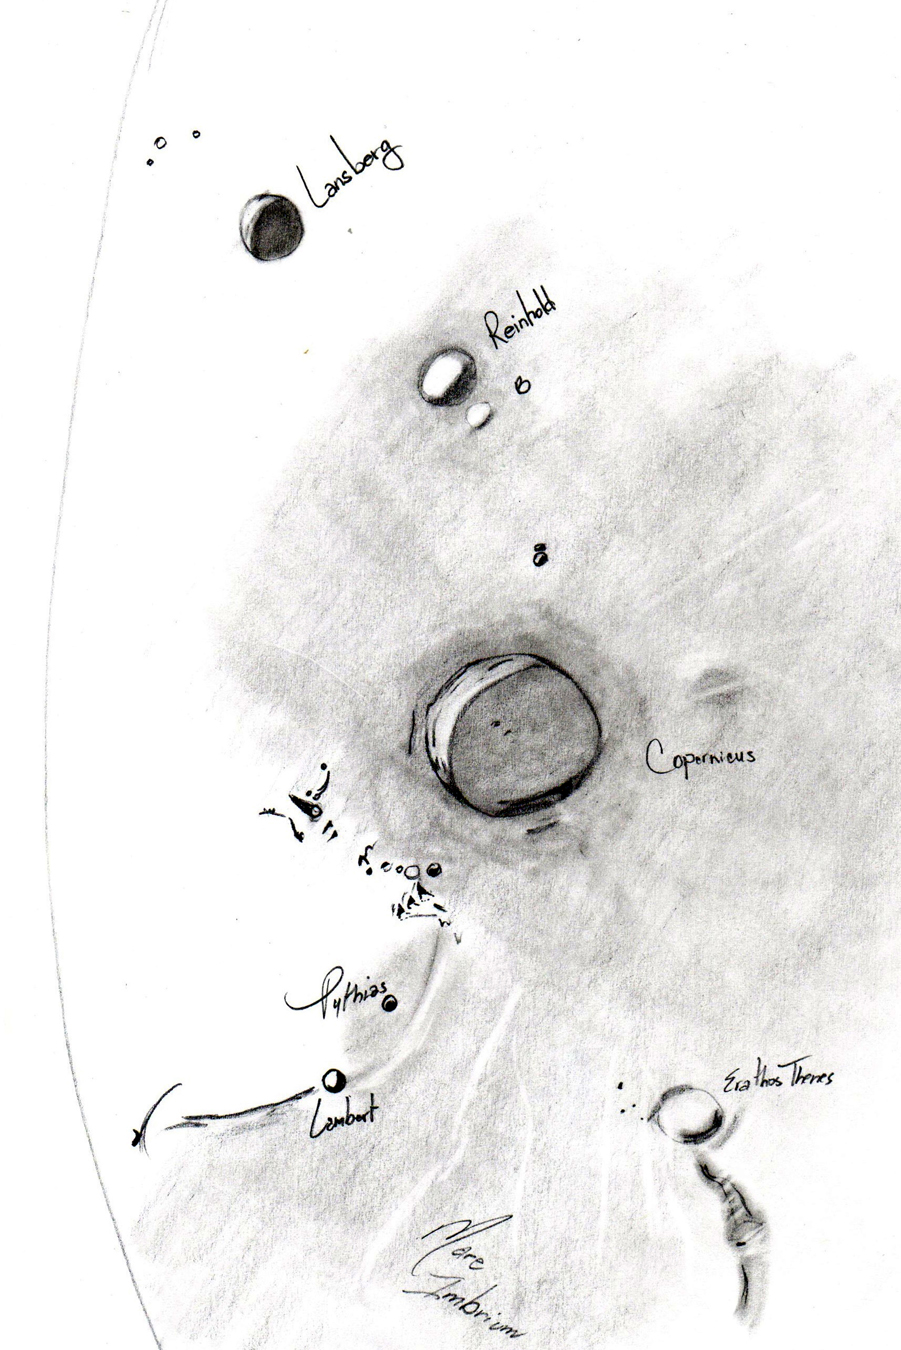 Sketch of Mare Imbrium and Copernicus